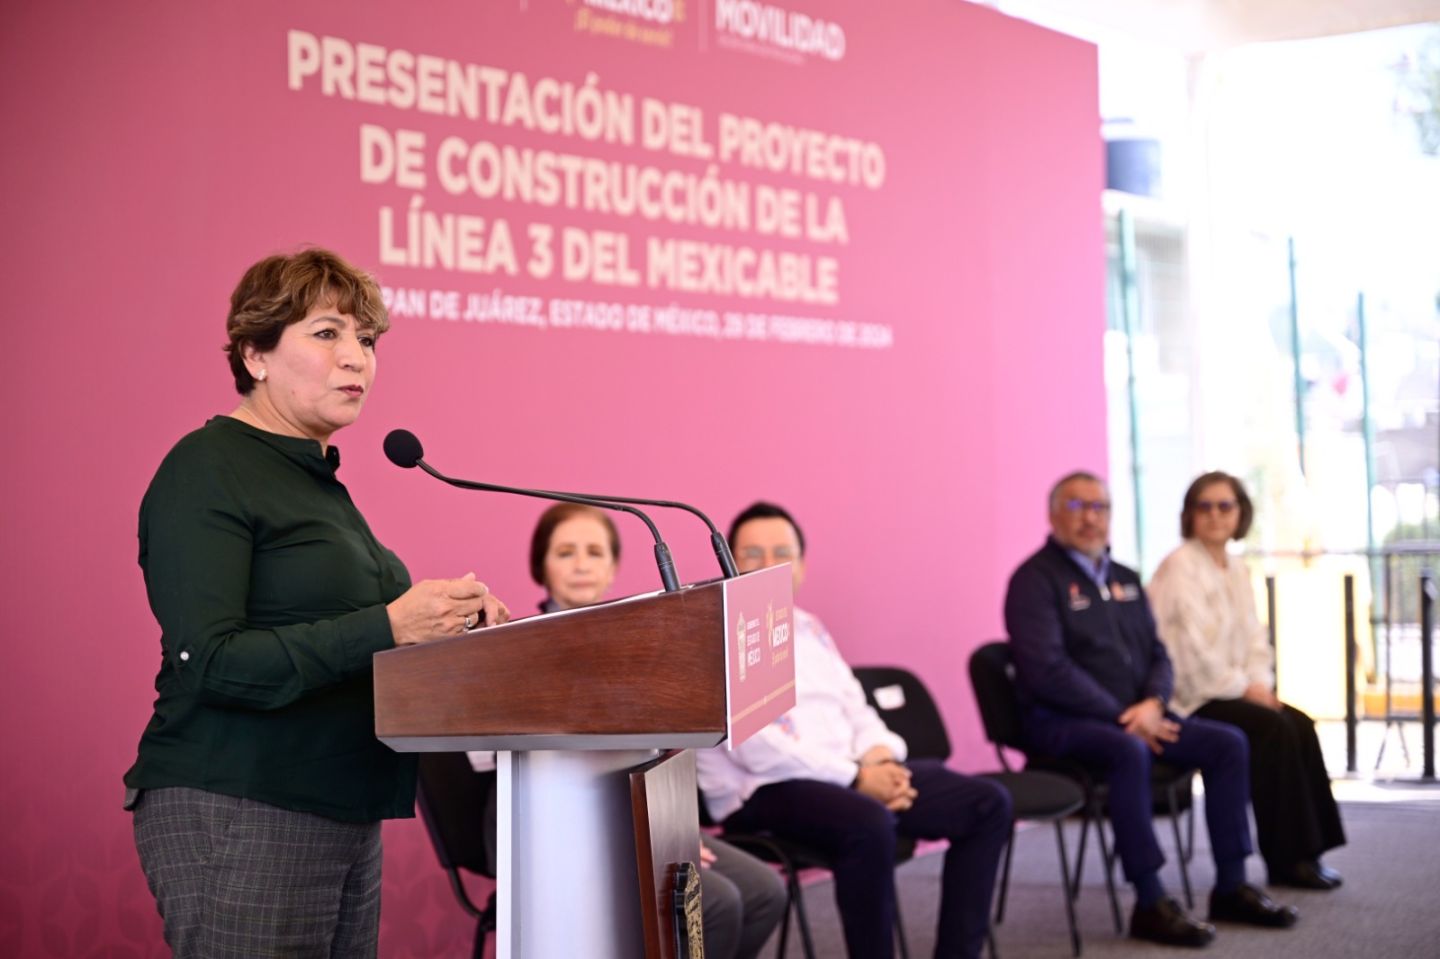 Anuncia Gobernadora Delfina Gómez construcción de la Línea 3 del Mexicable en Naucalpan, mejorará la movilidad de 700 mil mexiquenses del Valle de México